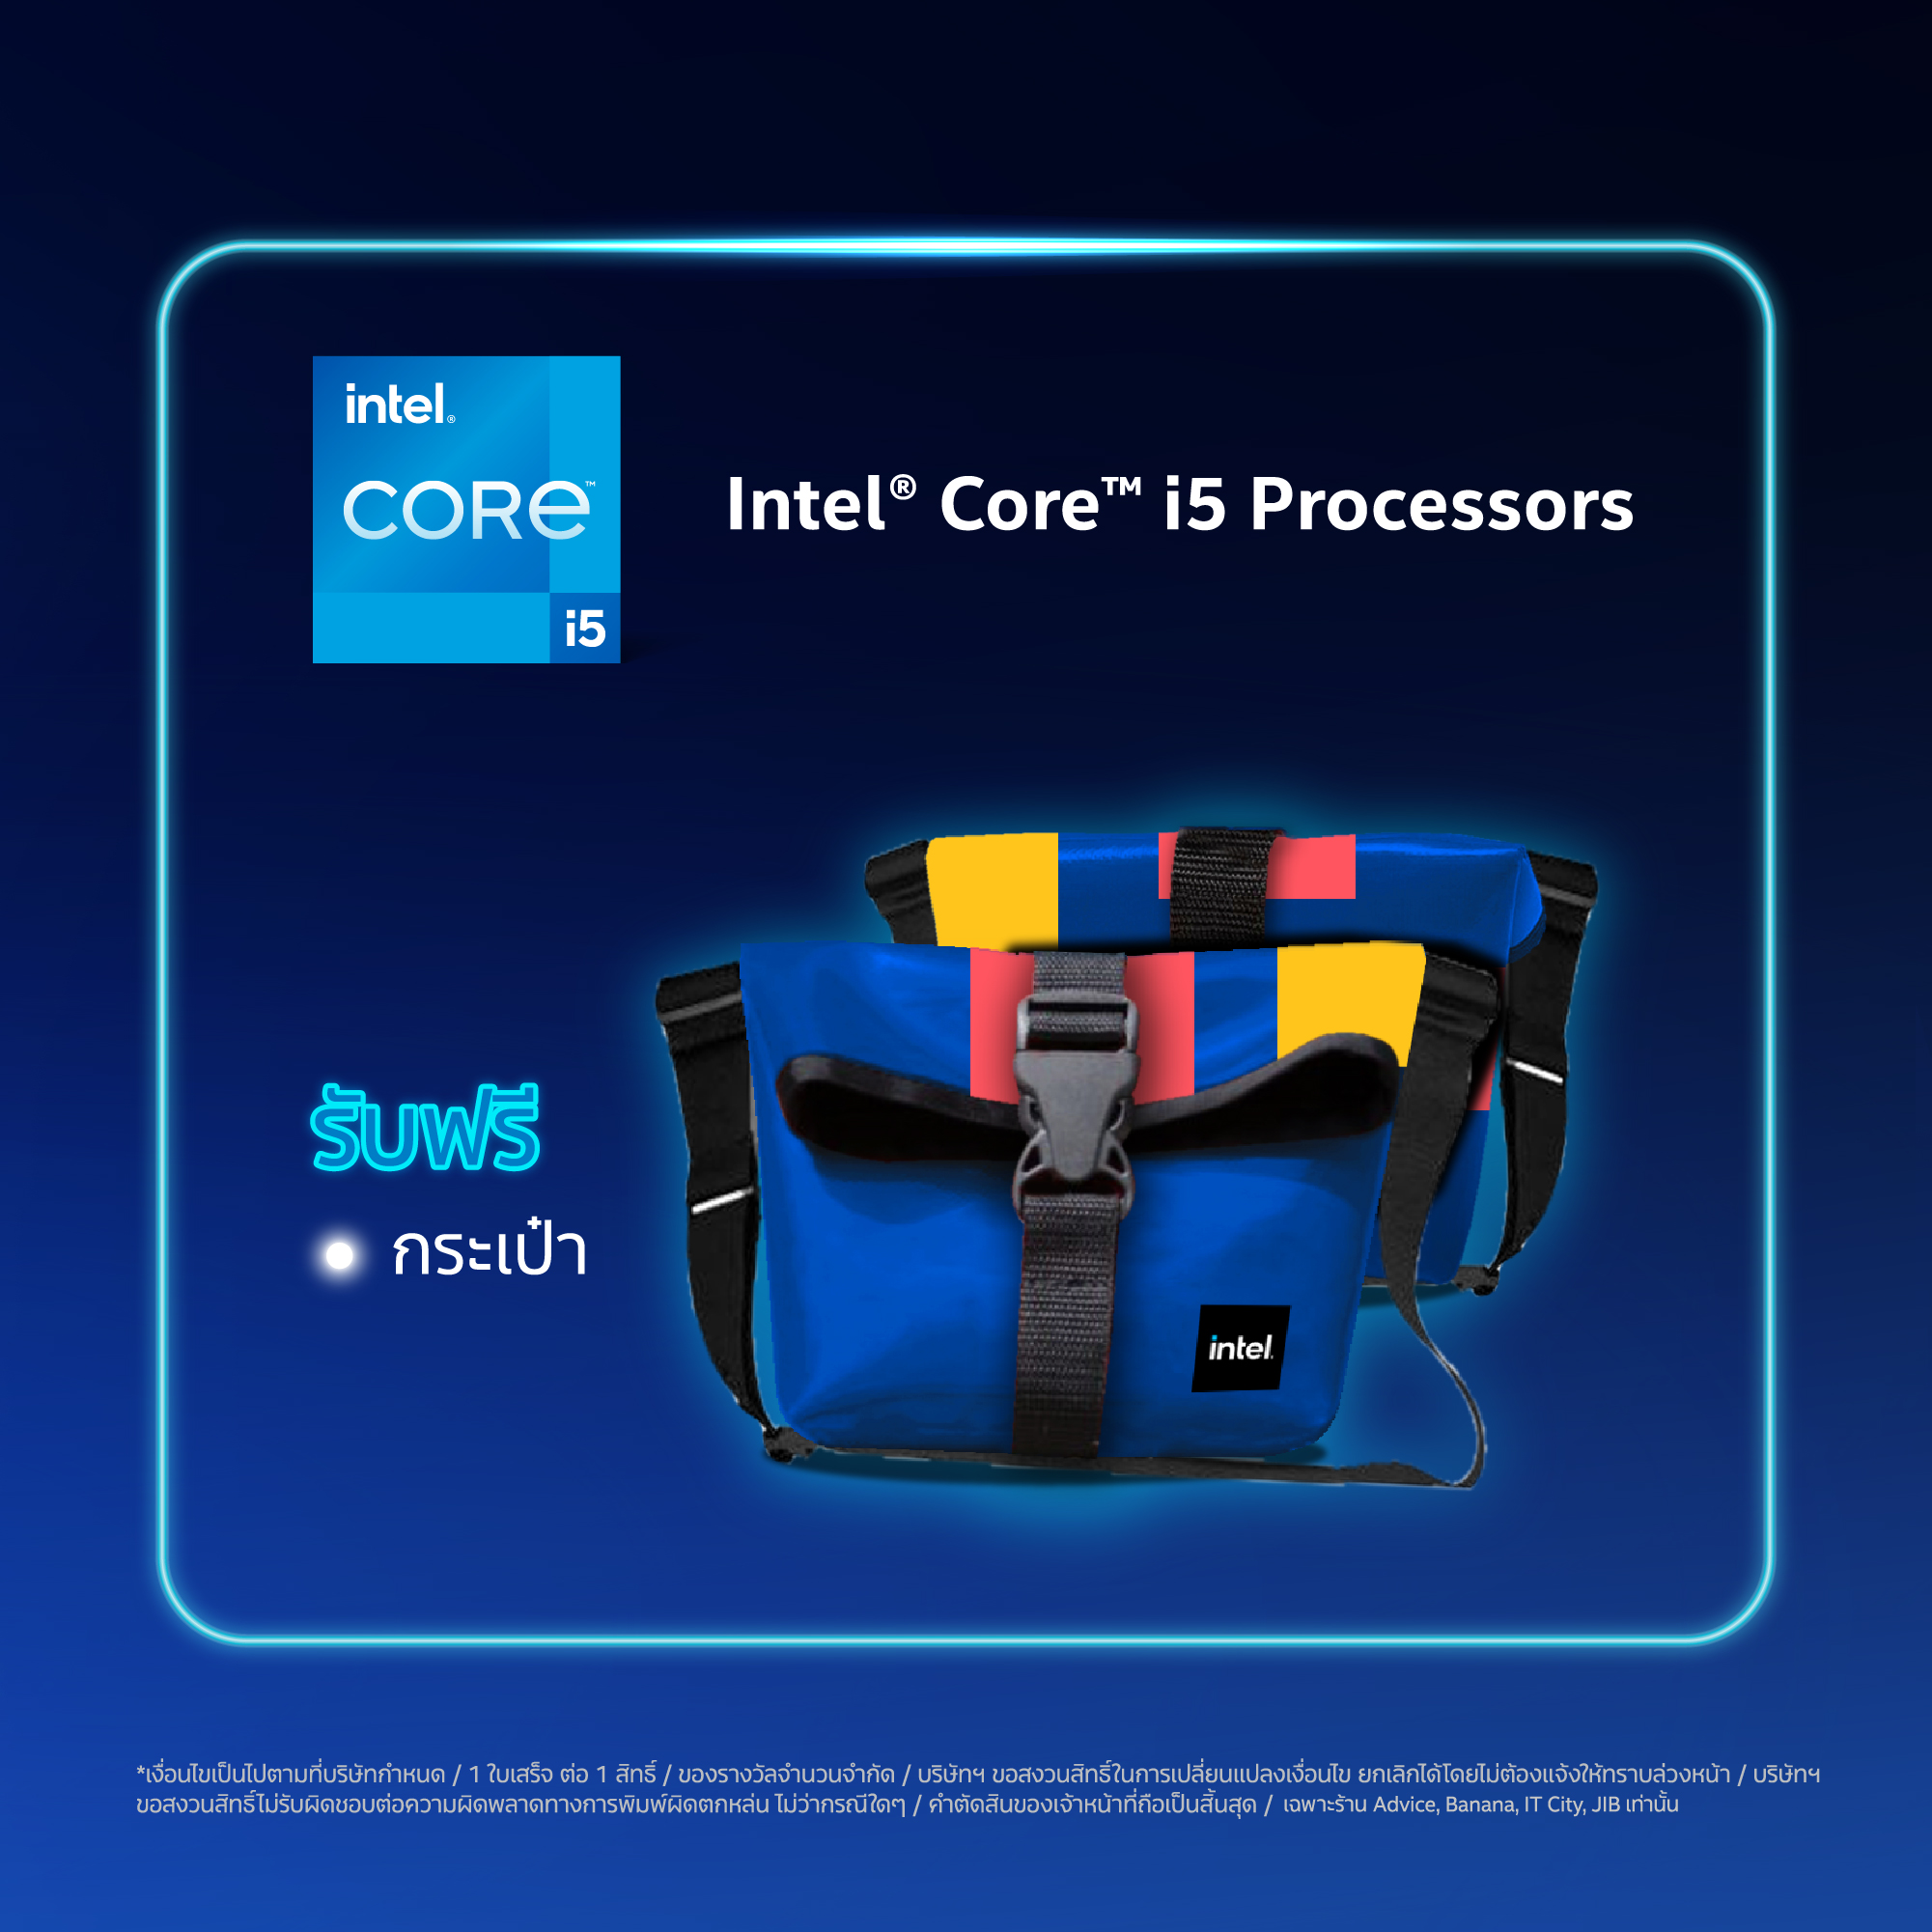 aw online 960x960px 03 Intel จัดโปรโมชั่น COMMART XTREME 2020 ซื้อคอมพิวเตอร์ที่ใช้ซีพียู Intel รับของแถมสุดพิเศษเพียบ! พบกับโปรโมชั่นสุดพิเศษจาก Intel เฉพาะงานคอมมาร์ท ไบเทค บางนา